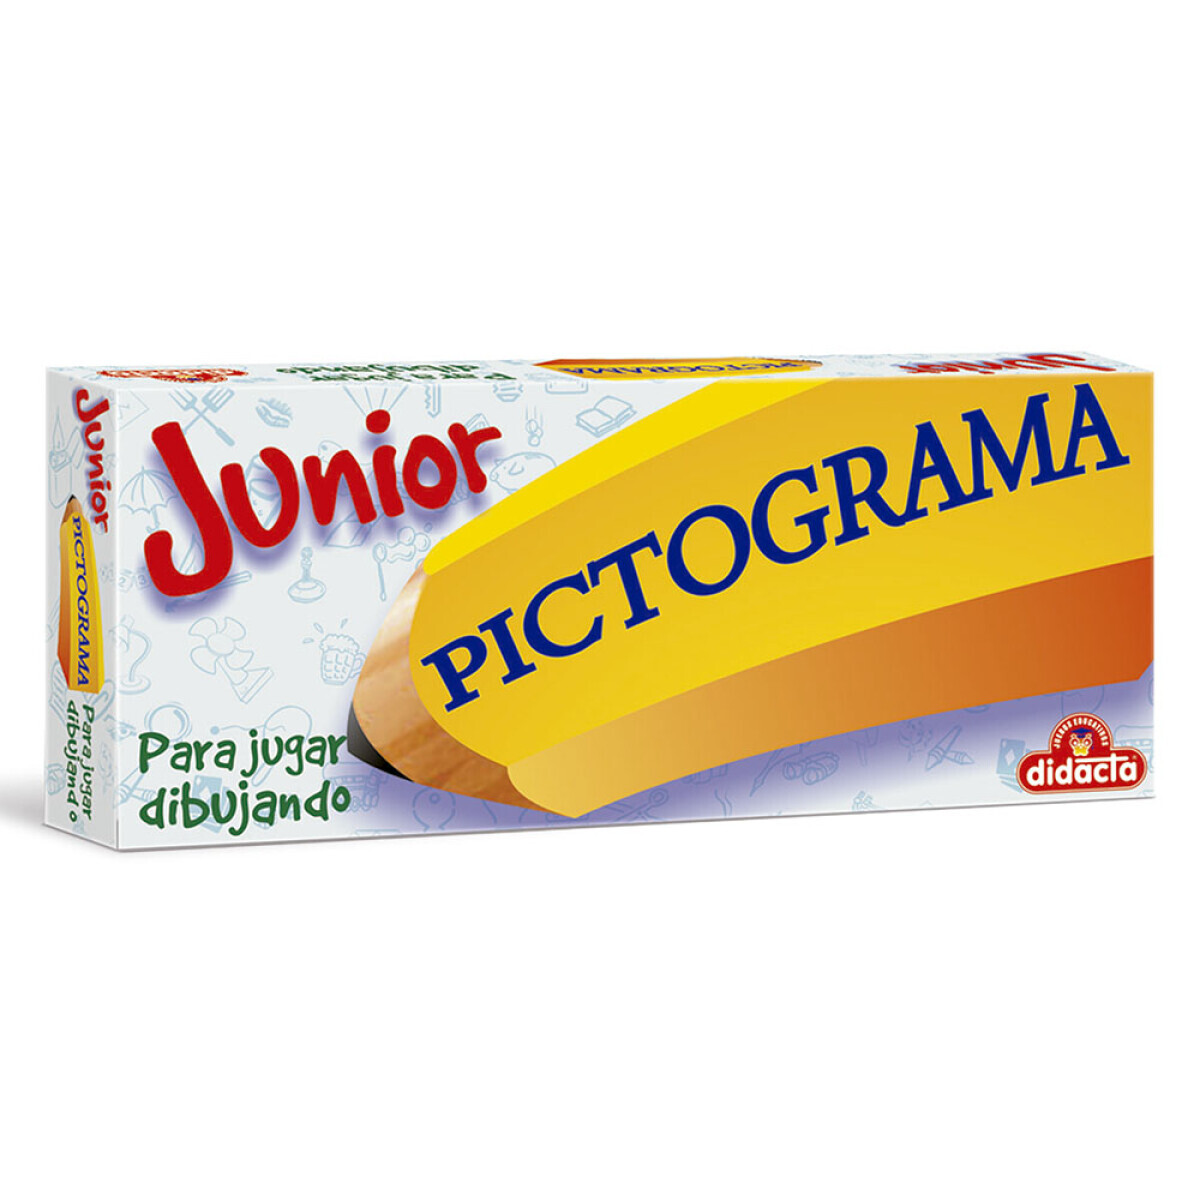 Juego educativo Pictograma Junior 